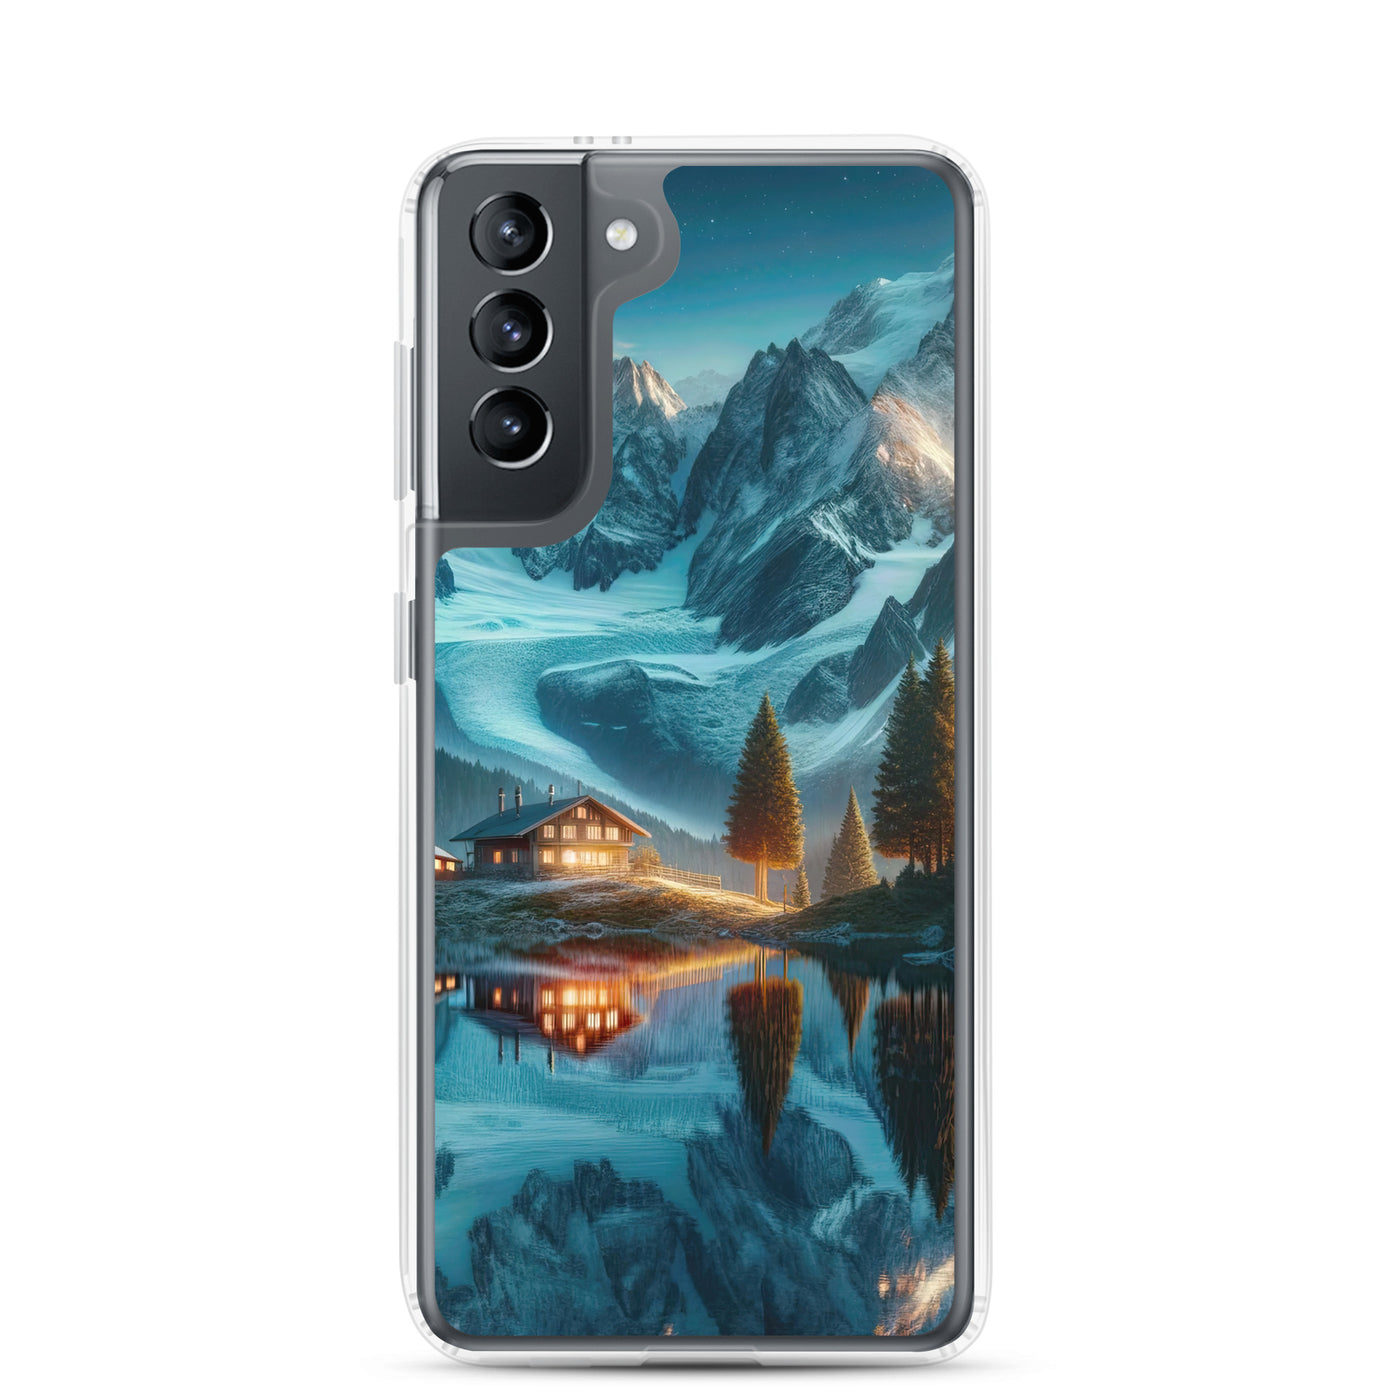 Stille Alpenmajestätik: Digitale Kunst mit Schnee und Bergsee-Spiegelung - Samsung Schutzhülle (durchsichtig) berge xxx yyy zzz Samsung Galaxy S21